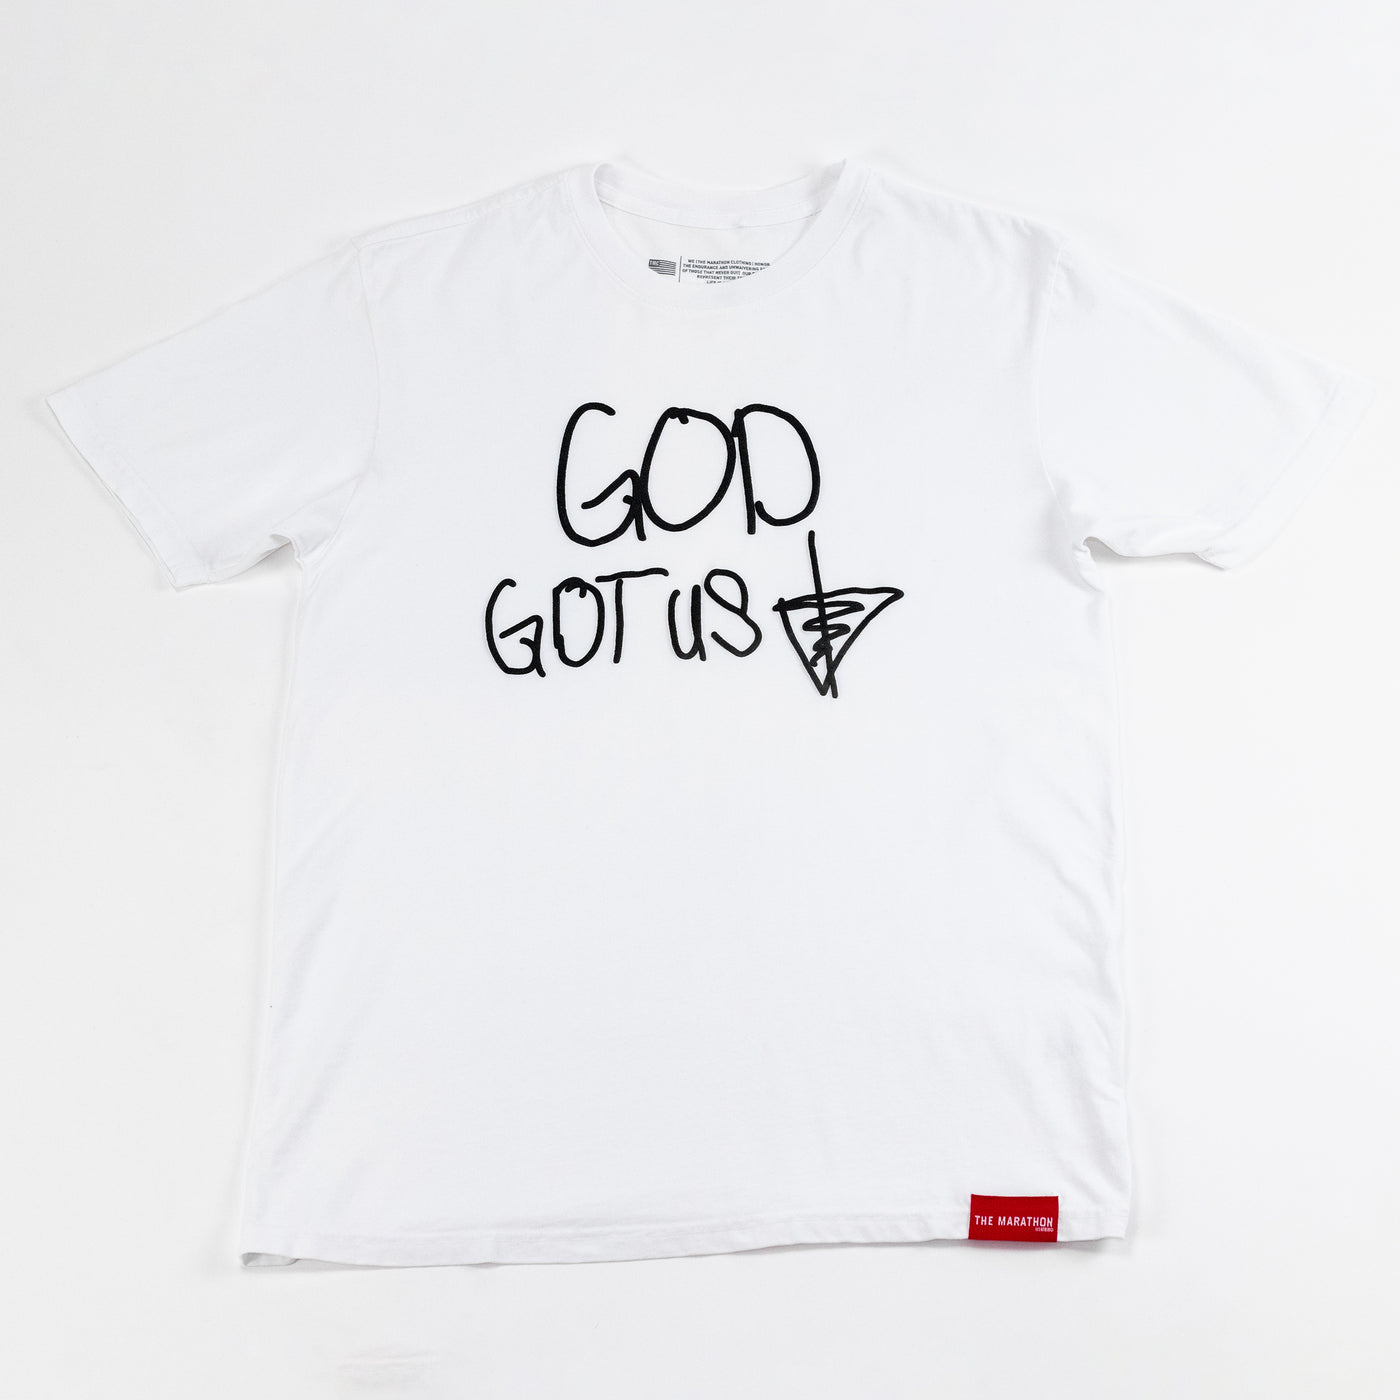 GOD Got Us T-shirt - White/Black